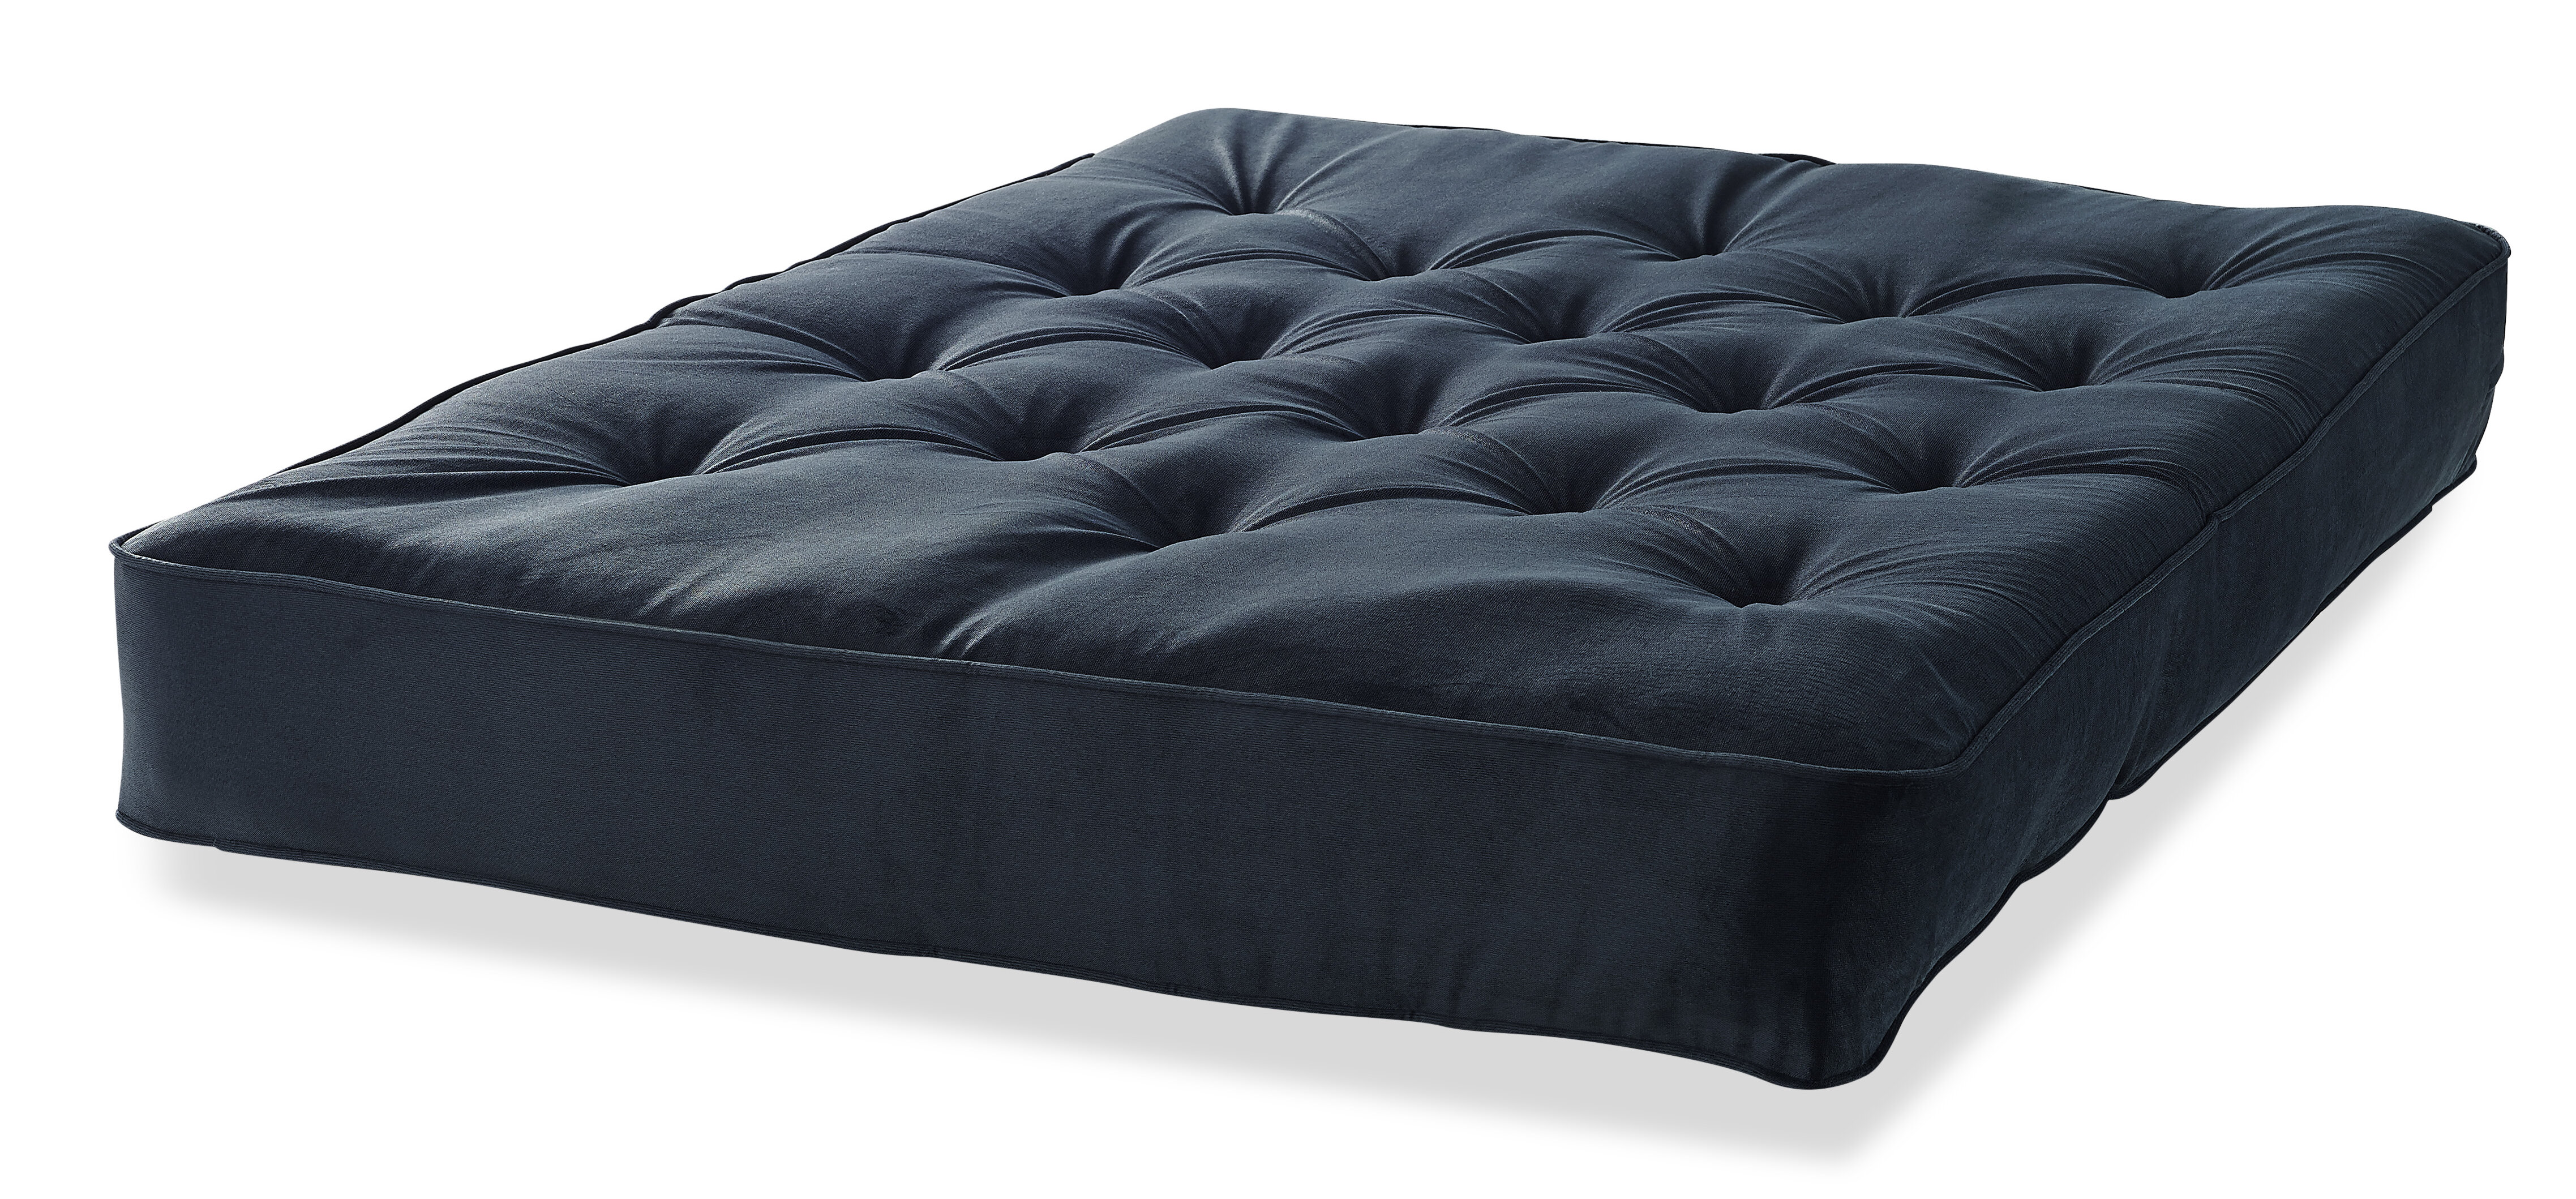 hinged futon mattress queen size